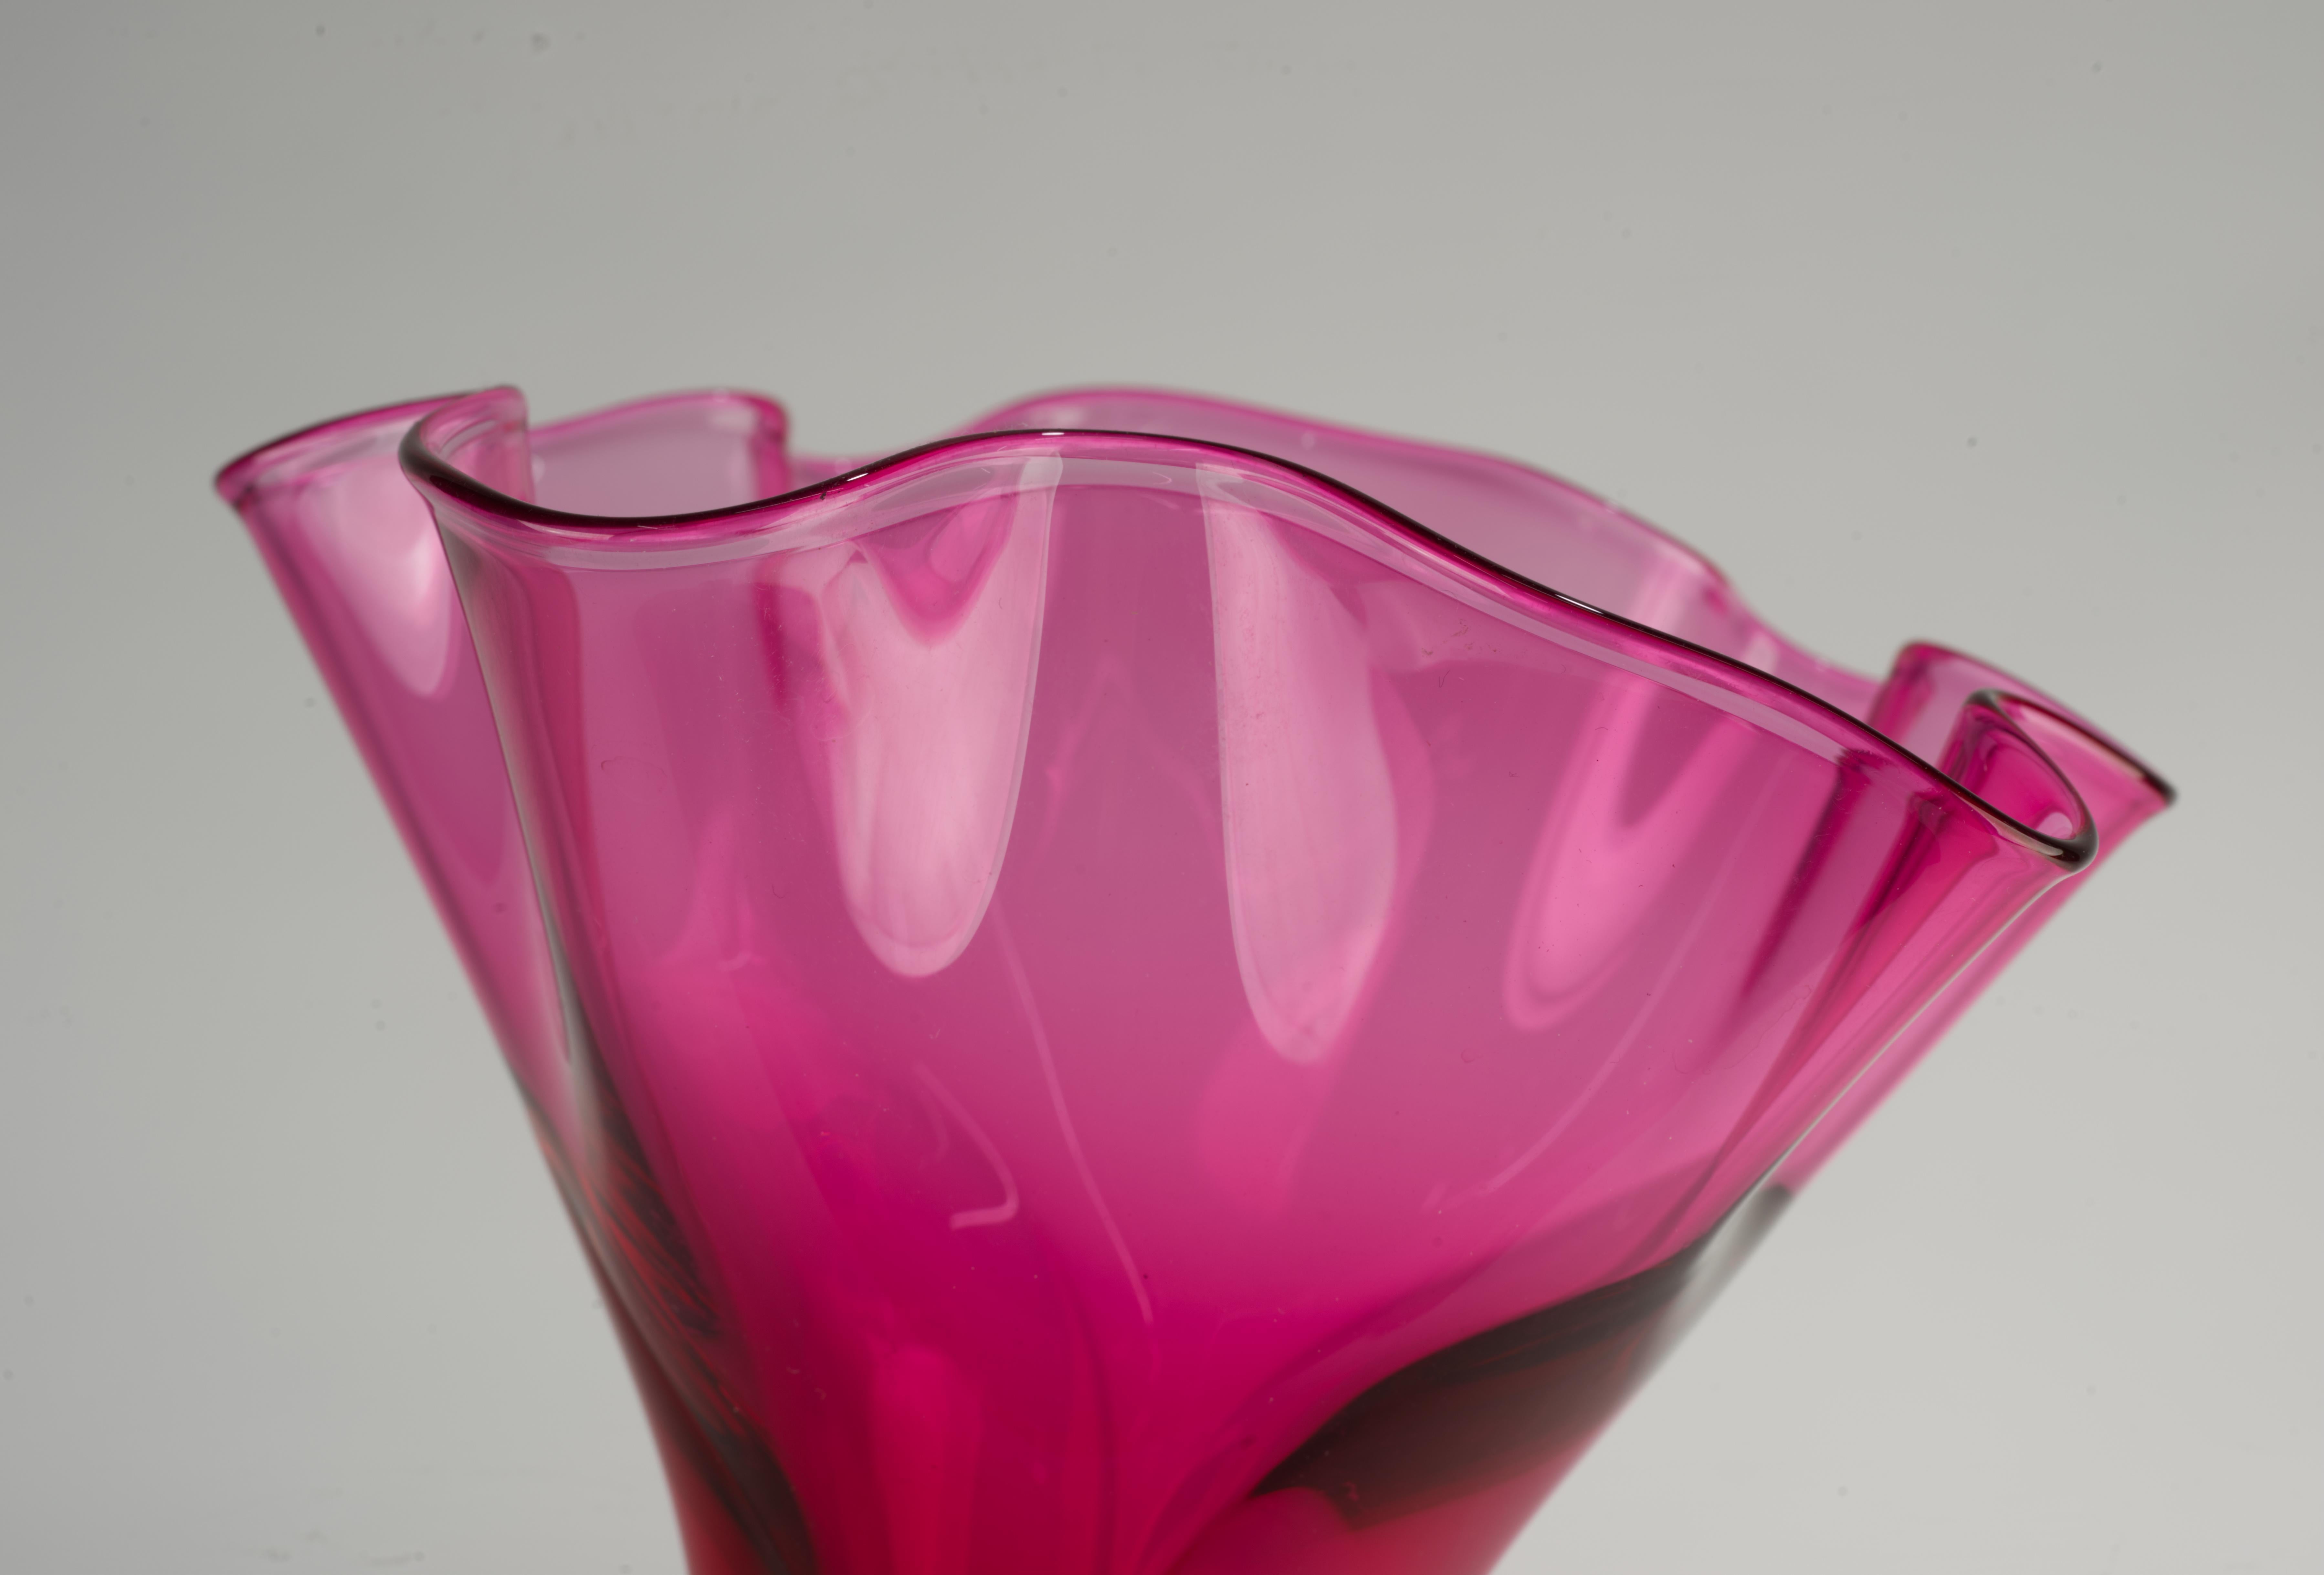 Die mundgeblasene Glasvase mit Blumenaufsatz wurde in einer grafischen Kombination aus dunkelrosa Glas und klarem Glas in der venezianischen Sommerso-Technik hergestellt. Die weiche, sinnliche Form des trompetenförmigen Vasenmundes erzeugt durch die